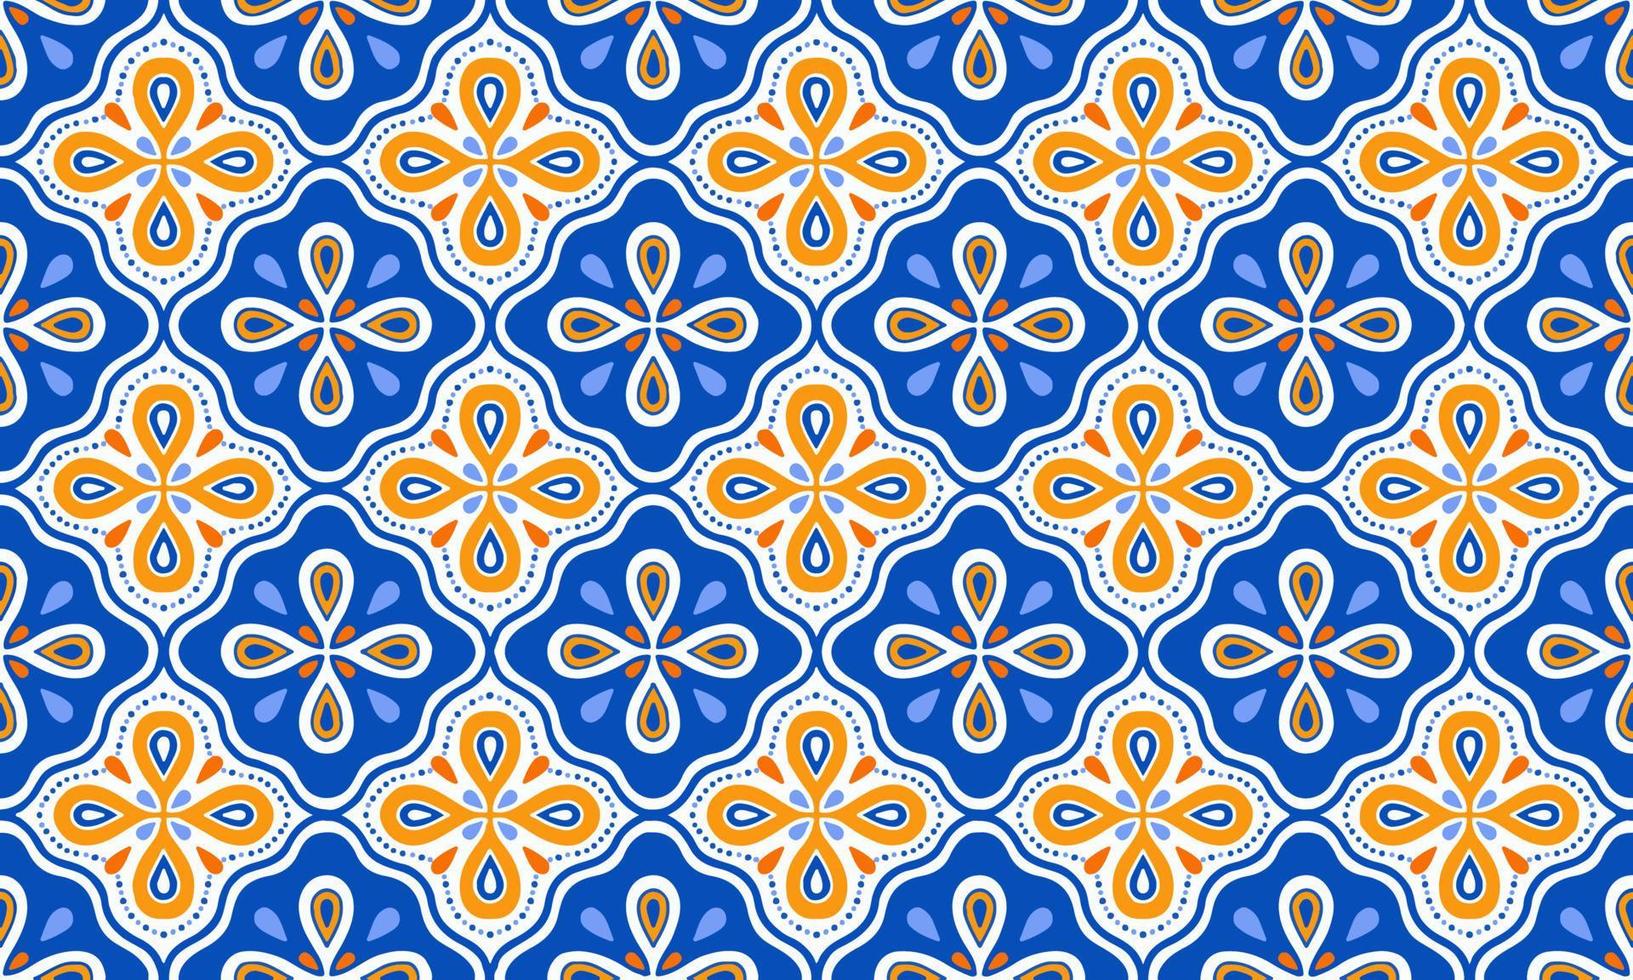 étnico resumen antecedentes linda naranja azul flor geométrico tribal ikat gente motivo Arábica oriental nativo modelo tradicional diseño alfombra fondo de pantalla ropa tela envase impresión batik gente vector